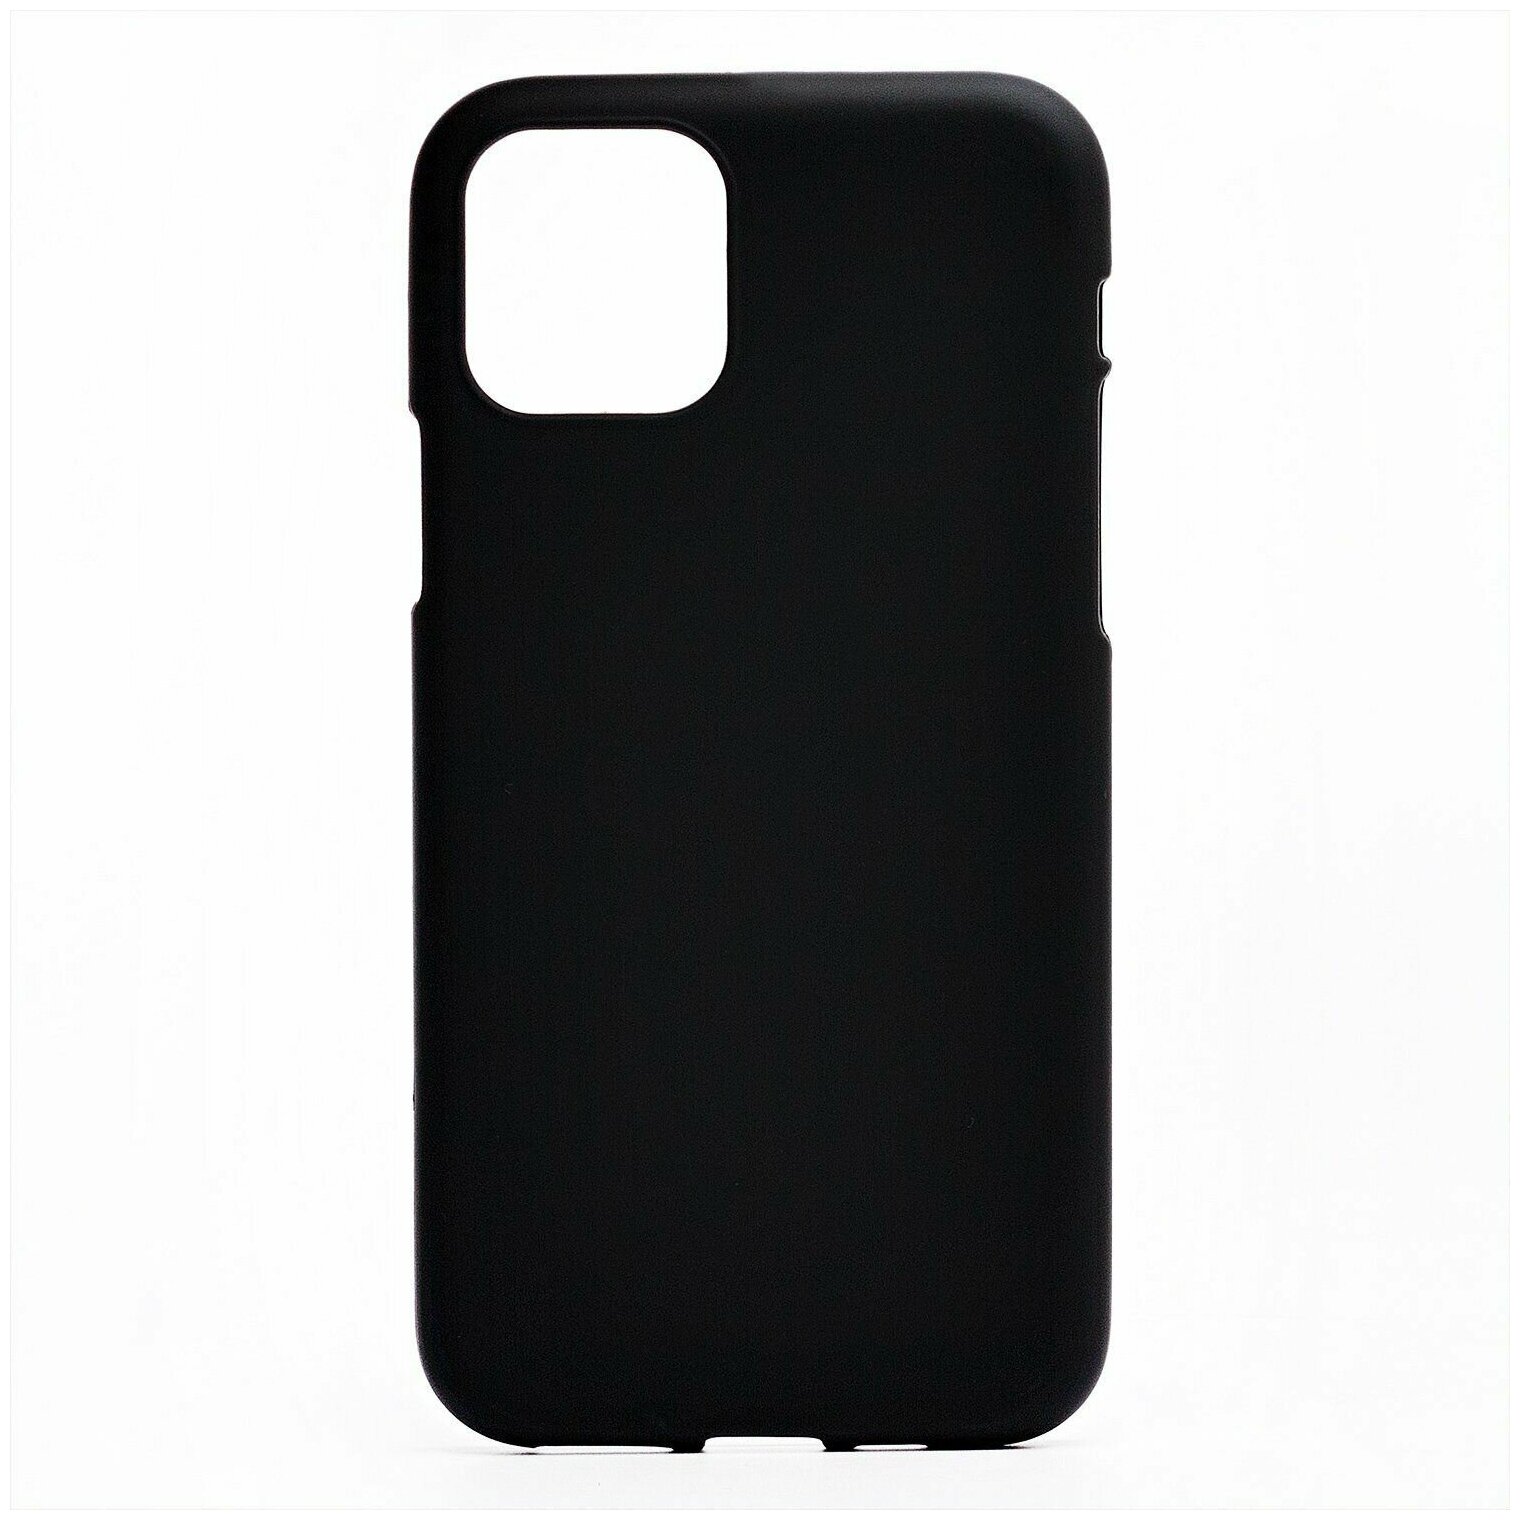 Чехол-накладка для смартфона Activ Mate для Apple iPhone 11 Pro, черный, 1 шт.